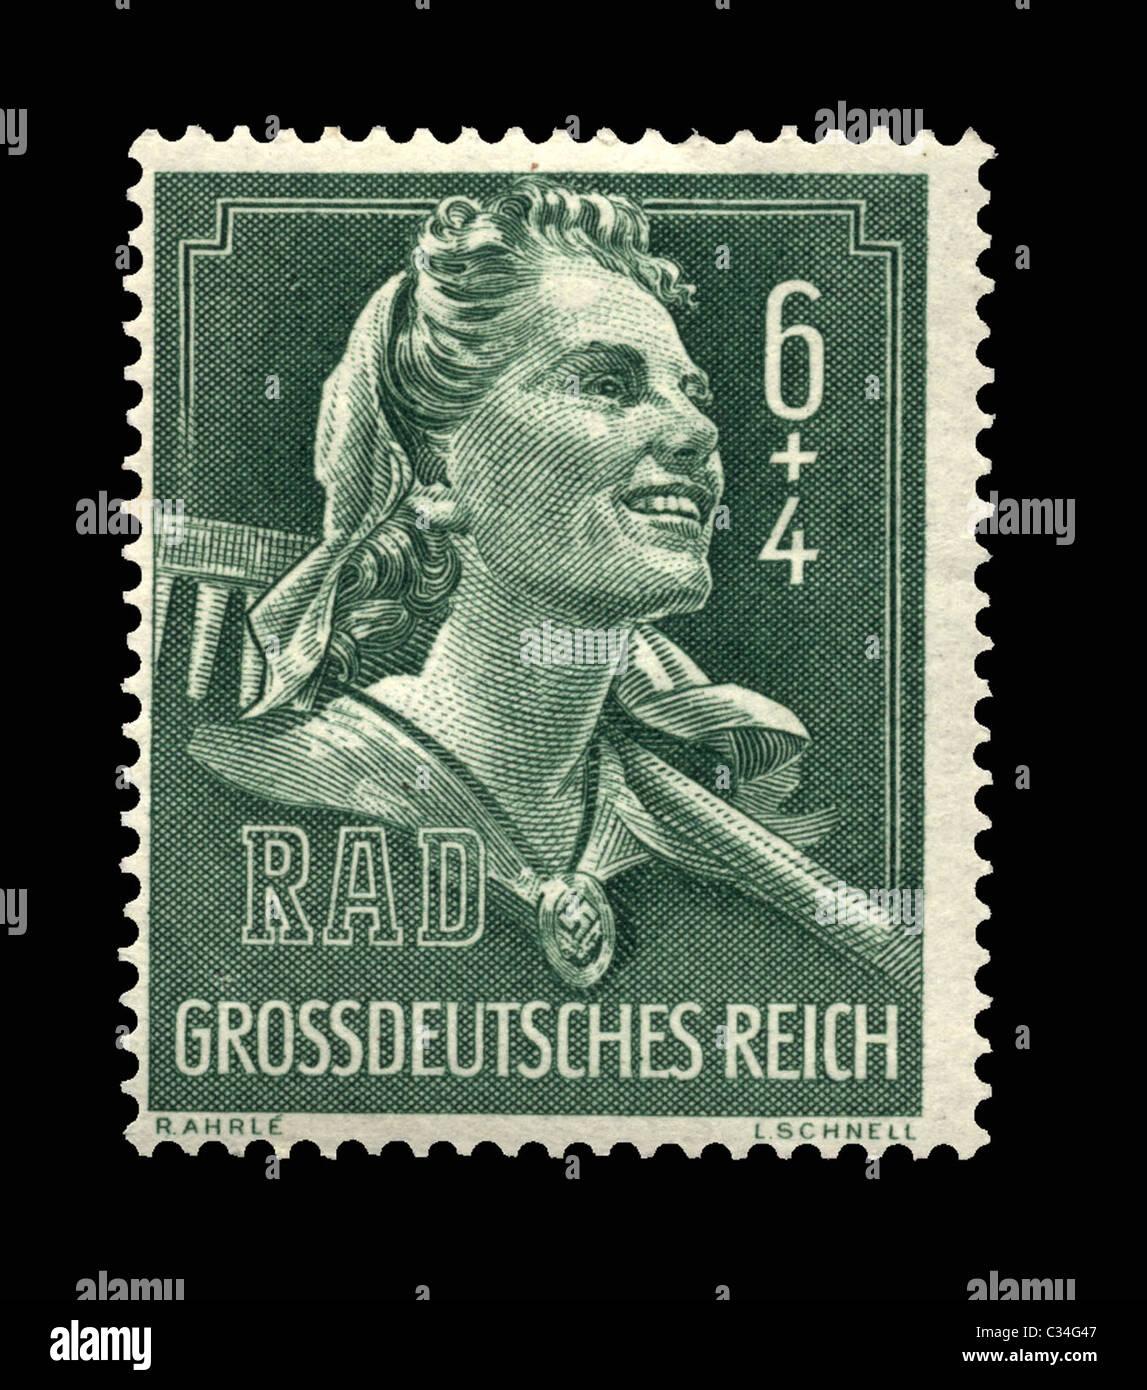 WW11 German postage stamp showing RADWJ girl in uniform with swastika badge. Stock Photo